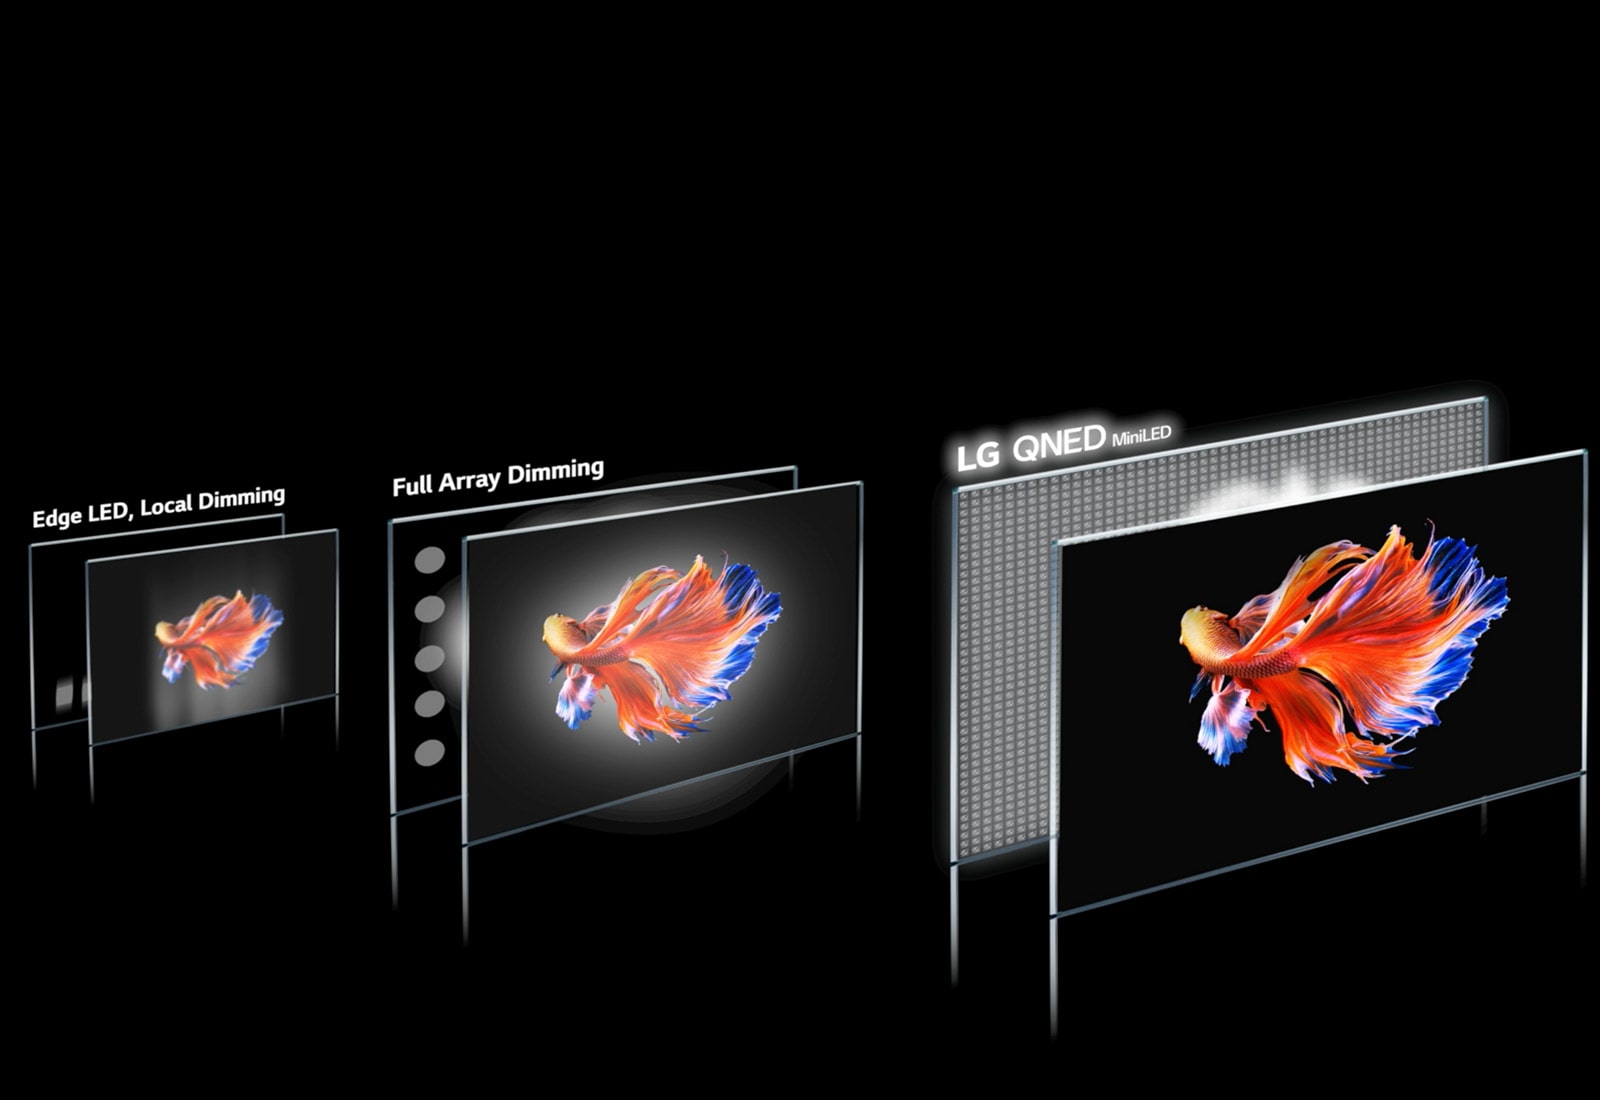 Slika tehnologije zatemnitve in bojevniške ribe na črnem ozadju na treh različnih zaslonih. LG QNED Mini LED je najsvetlejša z najmanj opaznim svetlobnim krogom in najsvetlejšimi barvami (predvajajte video).